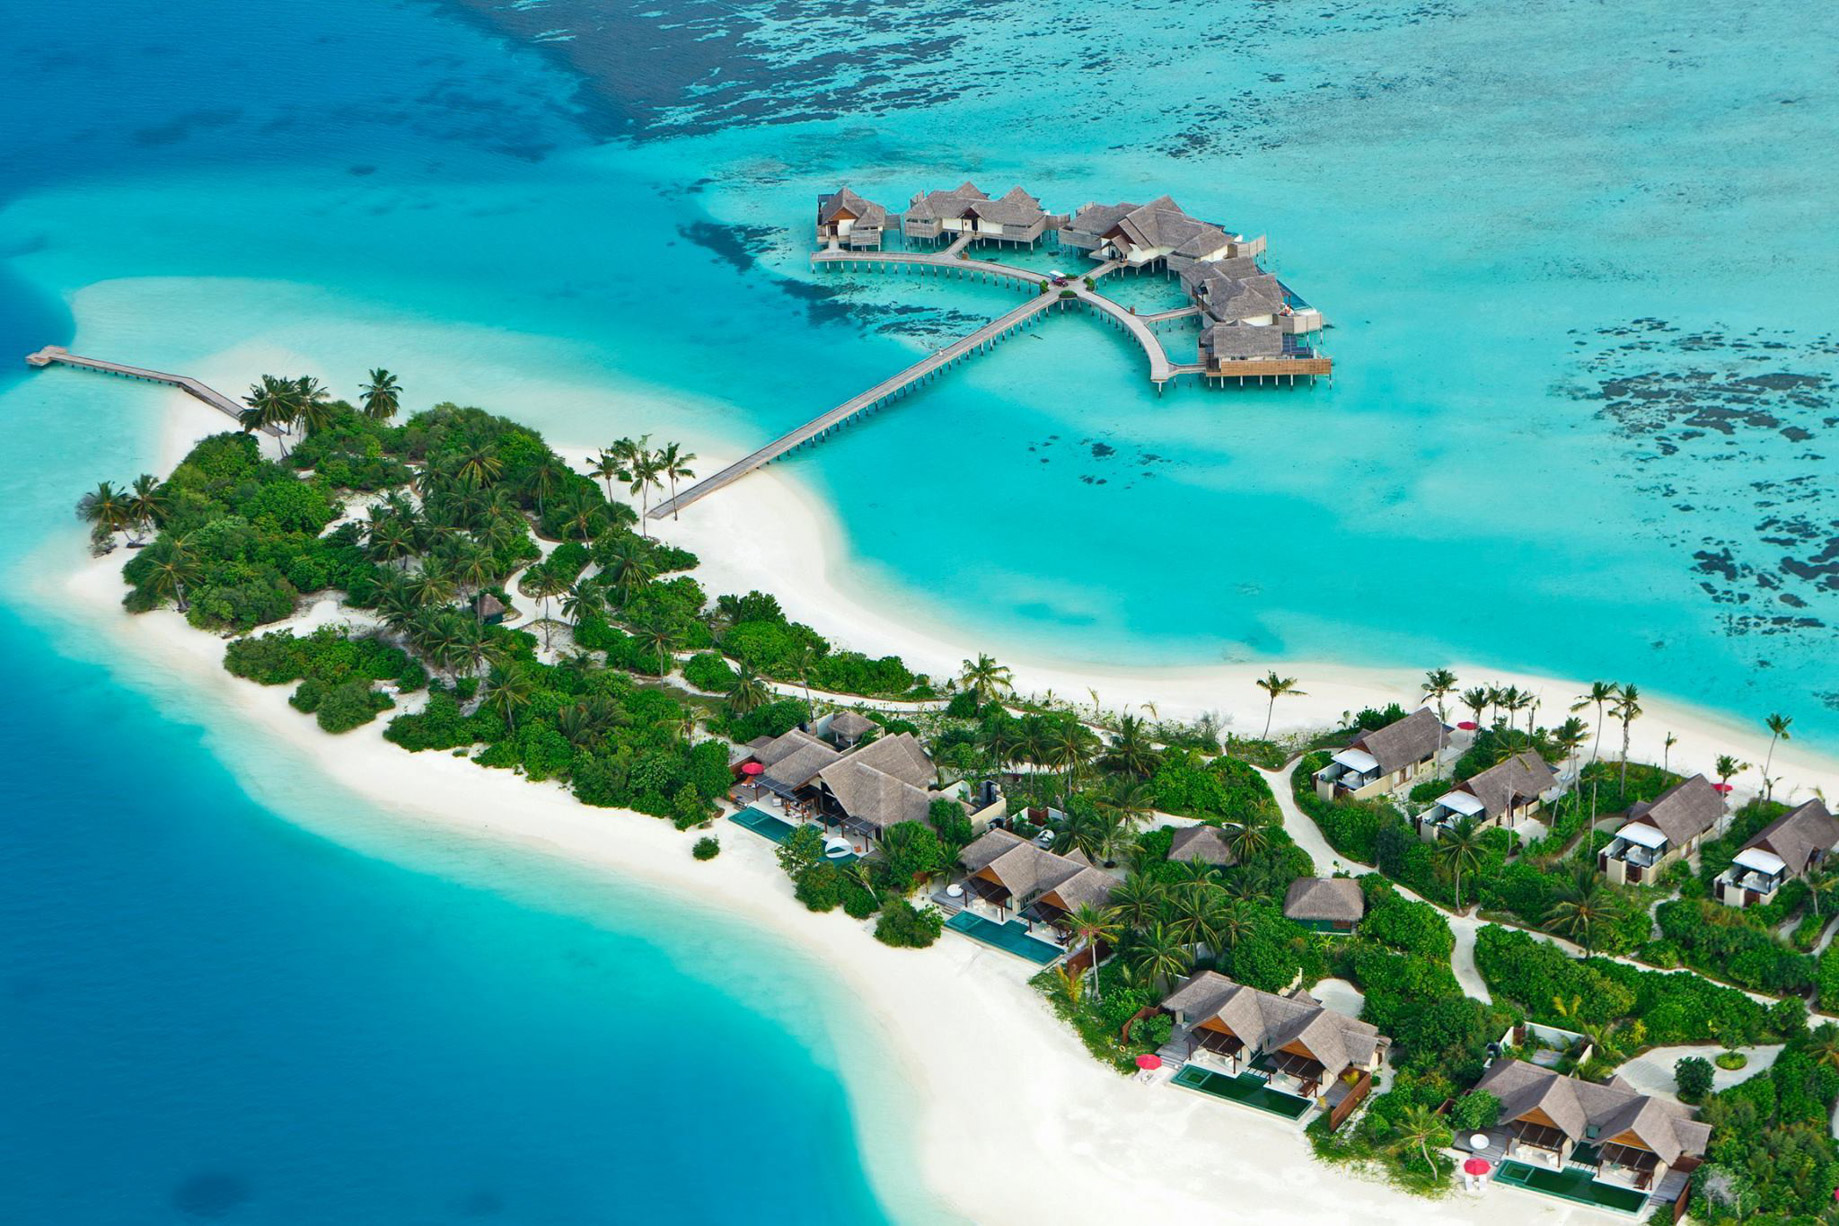 Niyama Private Islands Maldives Resort – Dhaalu Atoll, Maldives – Beach Pool Pavilions and Water Villas Aerial View